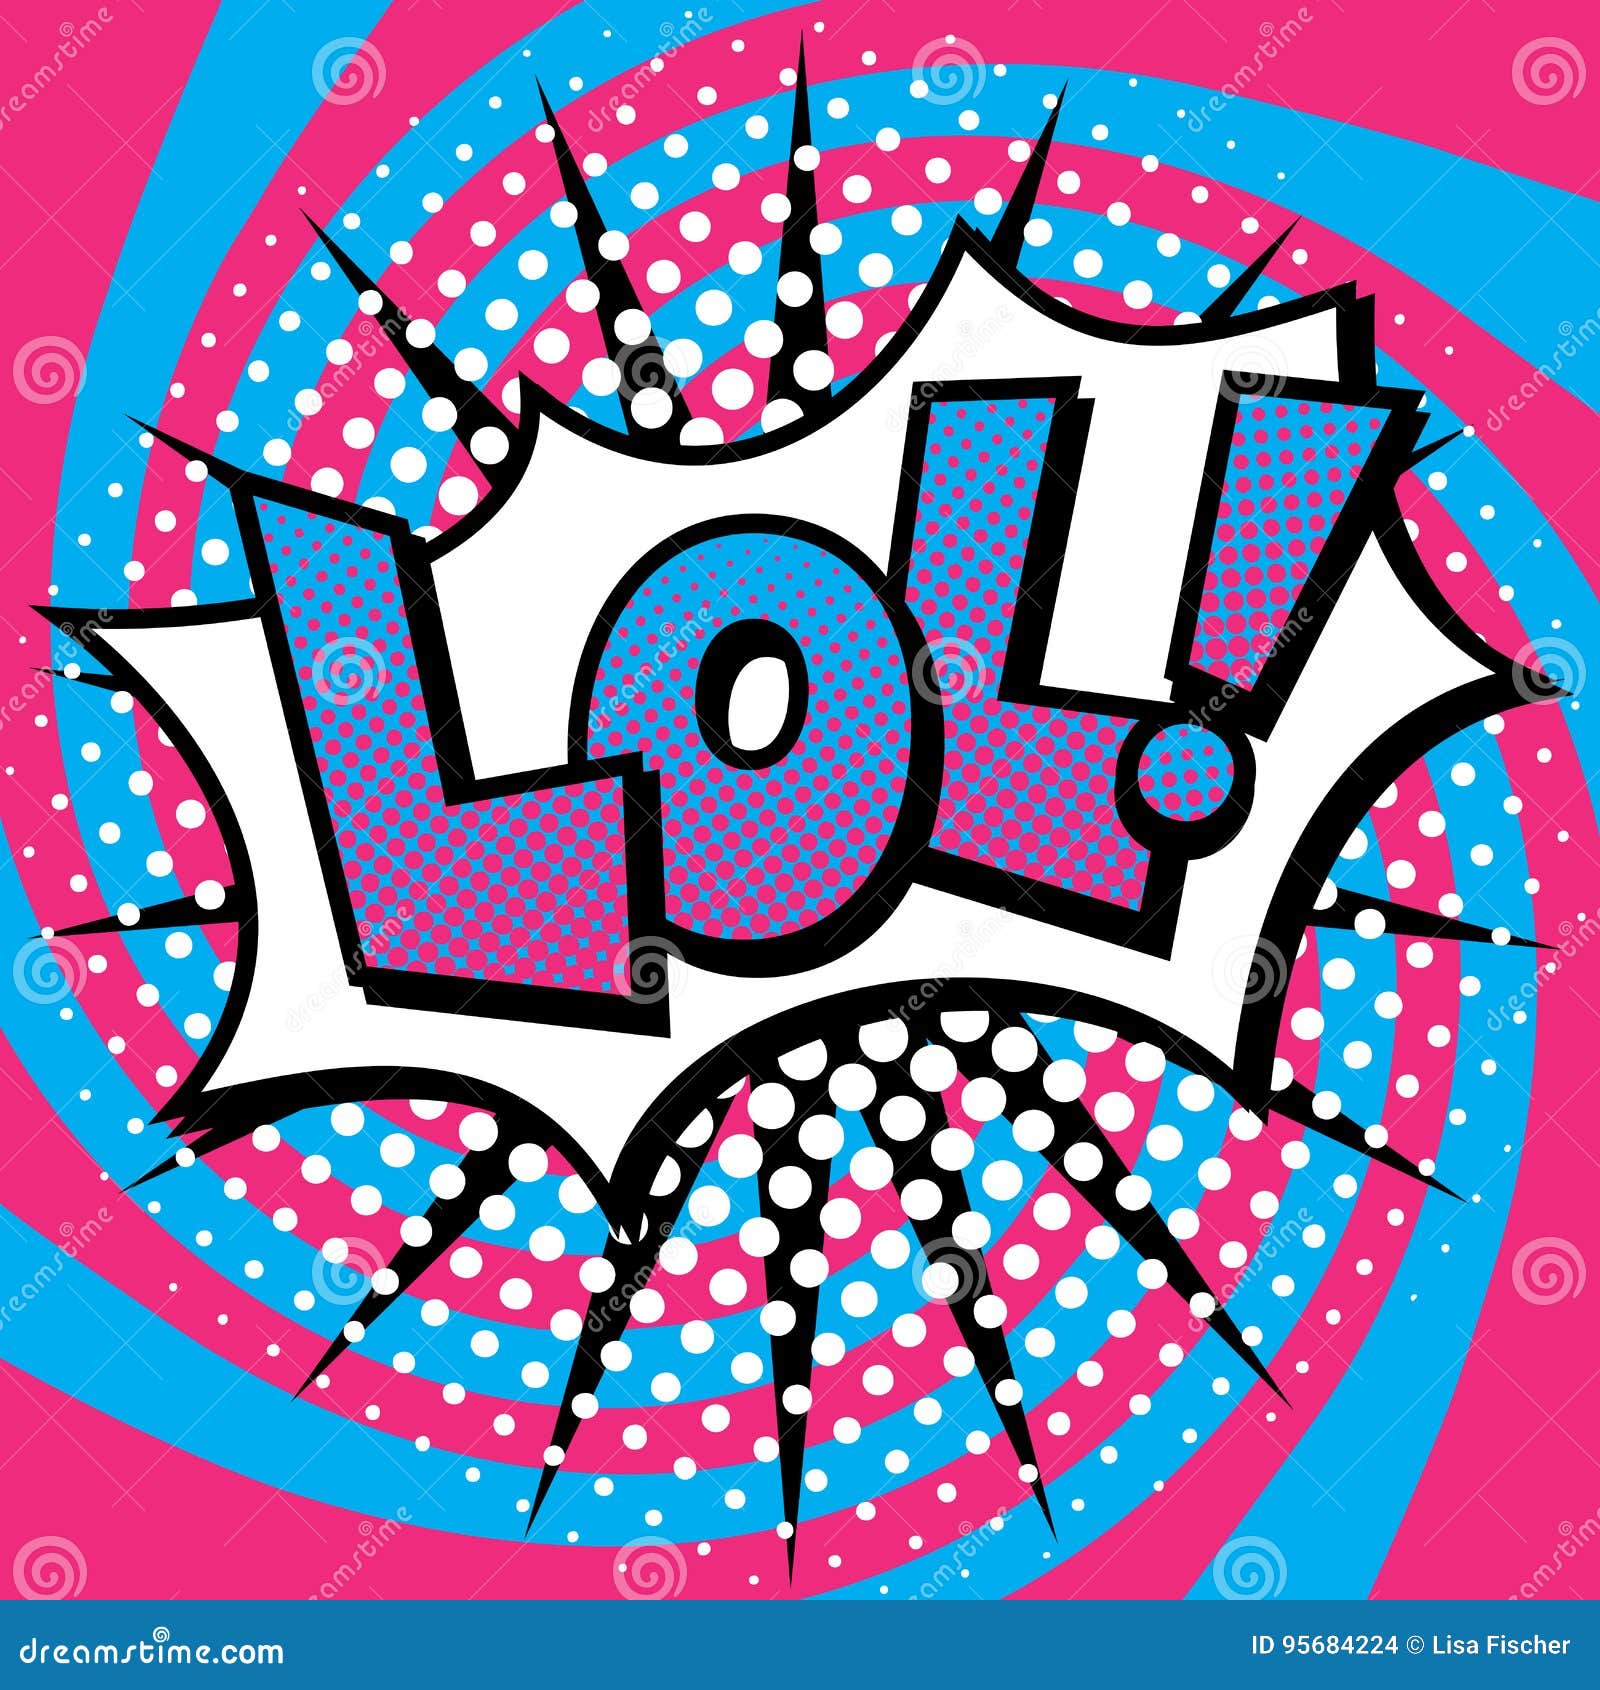  Pop  Art  LOL Text  Design  stock vector Illustration of 